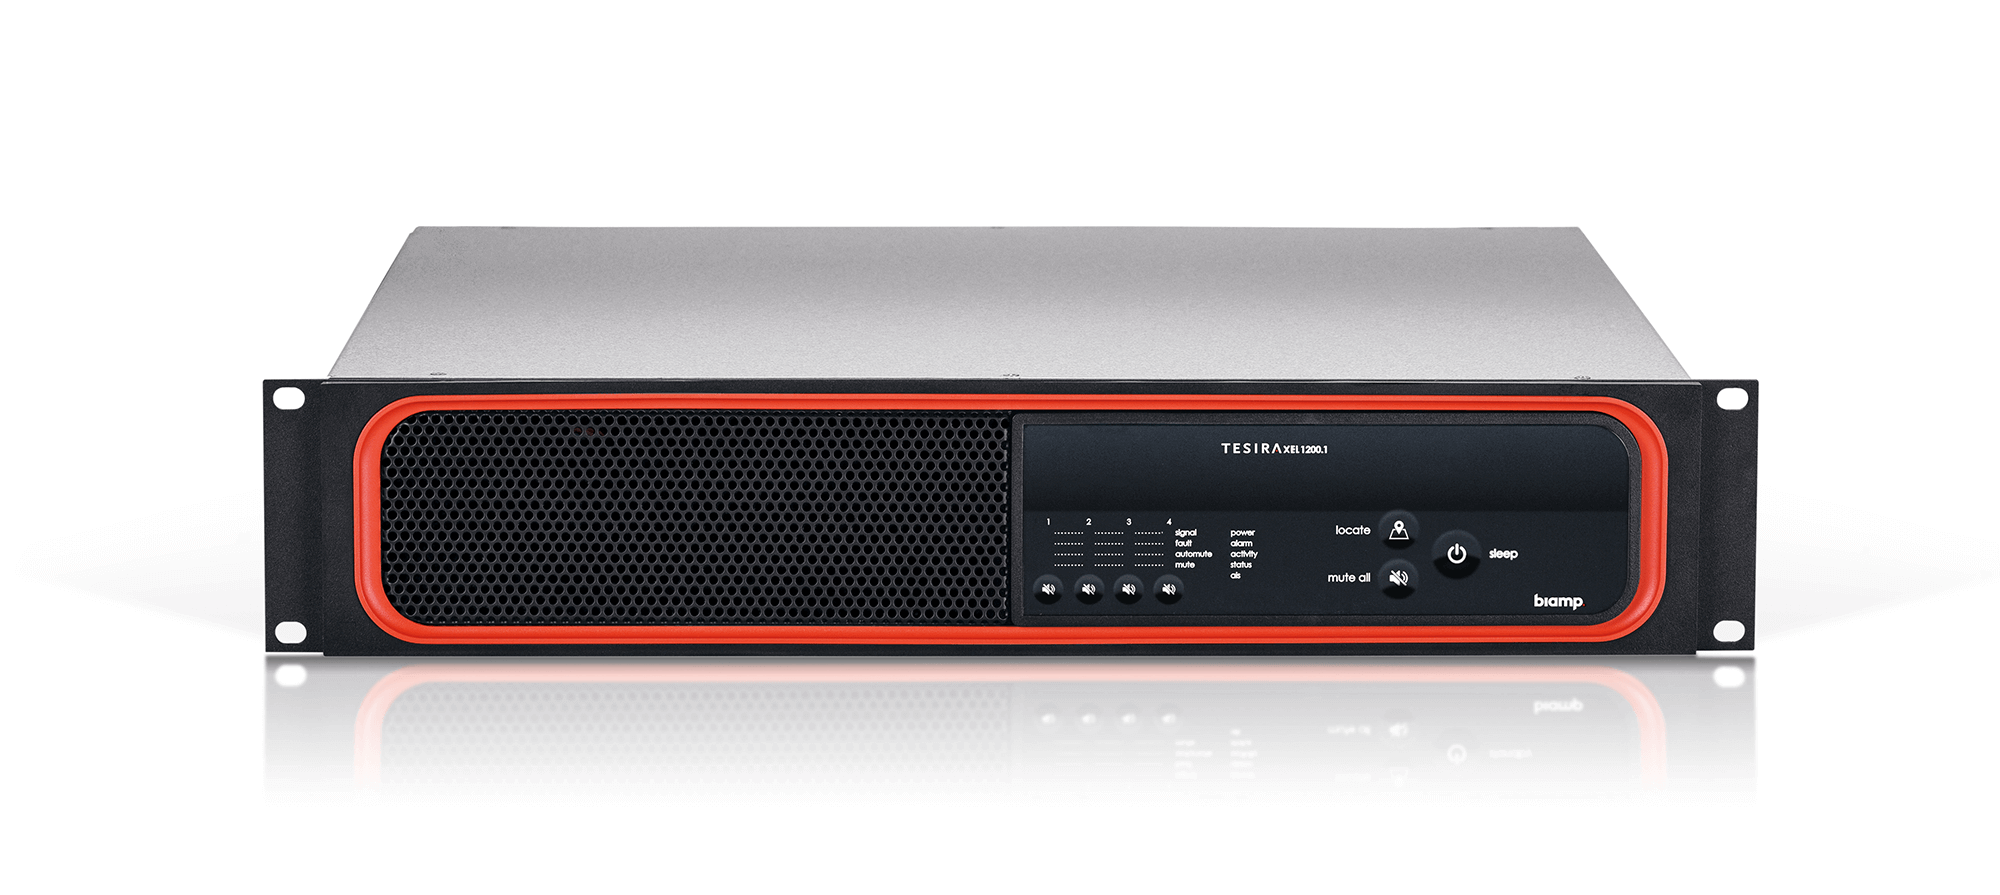 Biamp Xel 1200.1, Amplificador Digital En Red Avb Asimétrico Con Un Total De 1200w De Potencia